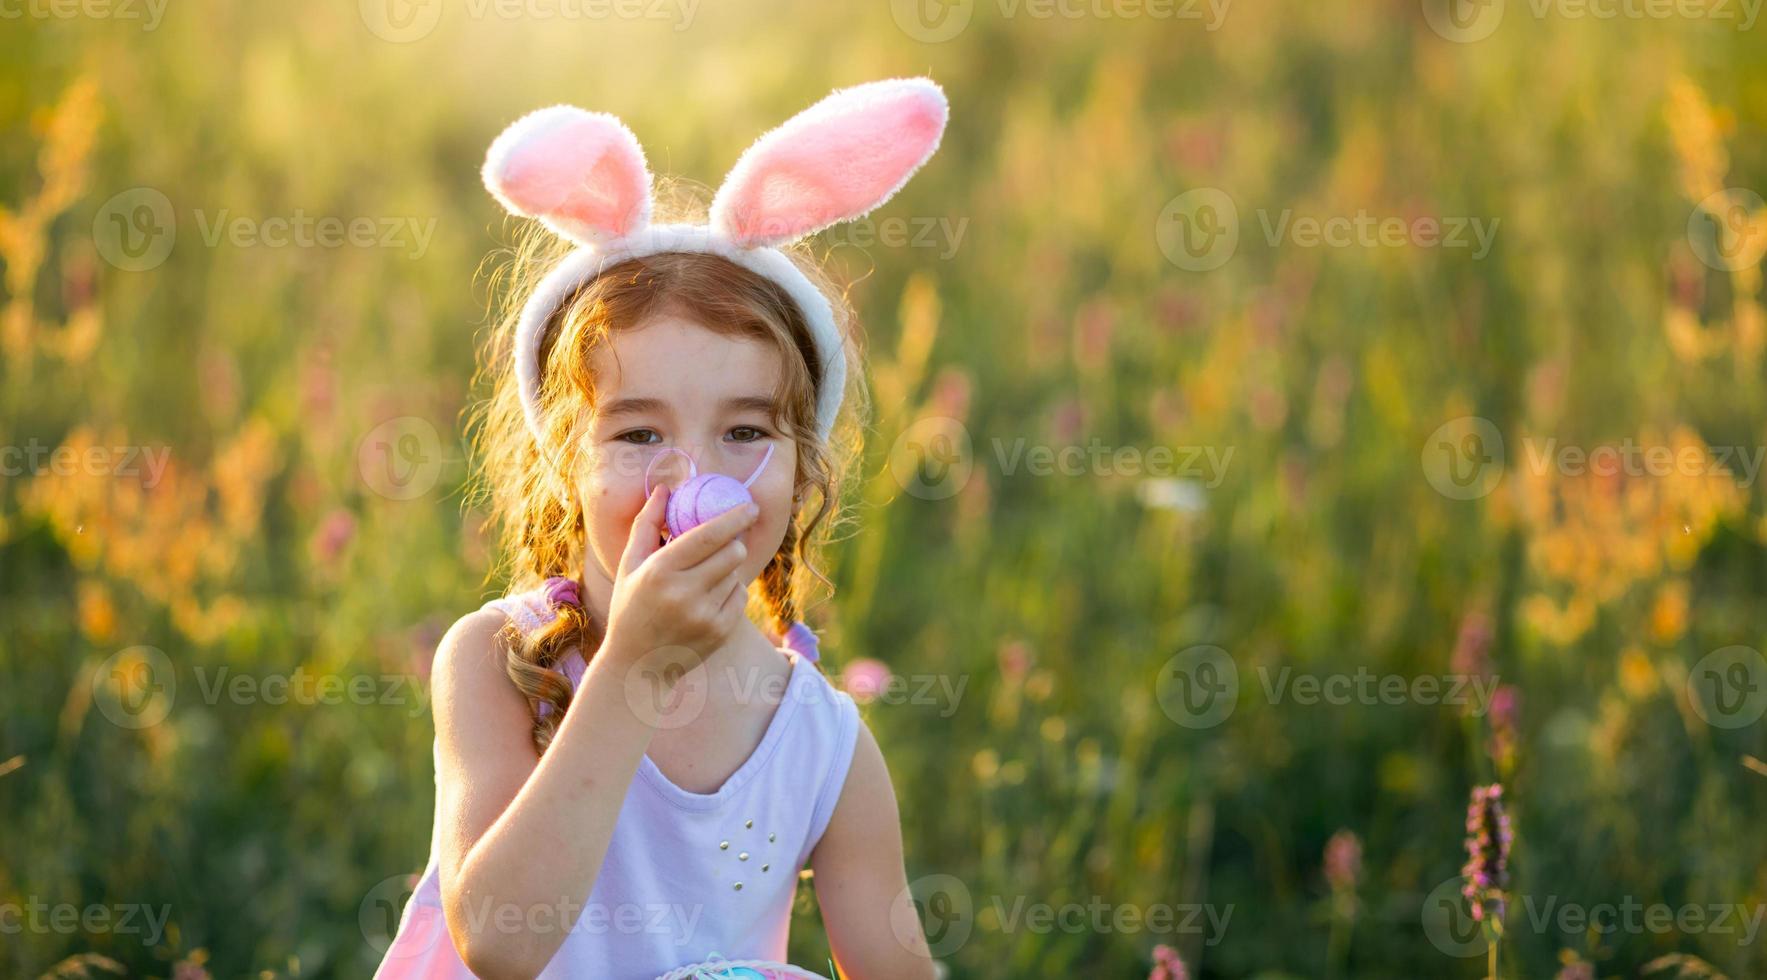 jolie fille drôle avec des oeufs de pâques peints au printemps dans la nature dans un champ avec du soleil doré et des fleurs. vacances de pâques, lapin de pâques avec des oreilles, oeufs colorés dans un panier. mode de vie photo